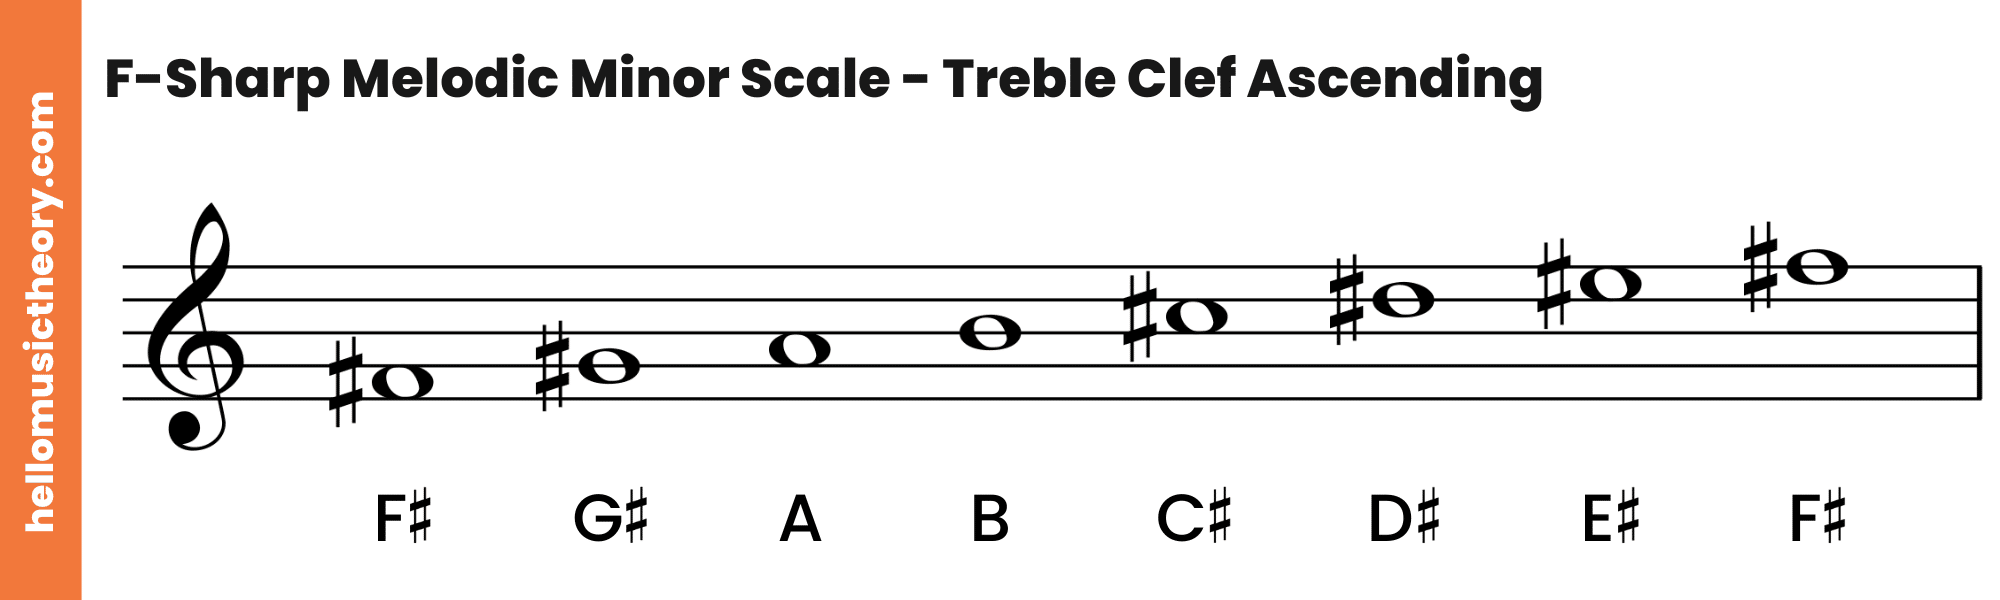 F-Sharp Melodic Minor Scale Treble Clef Ascending